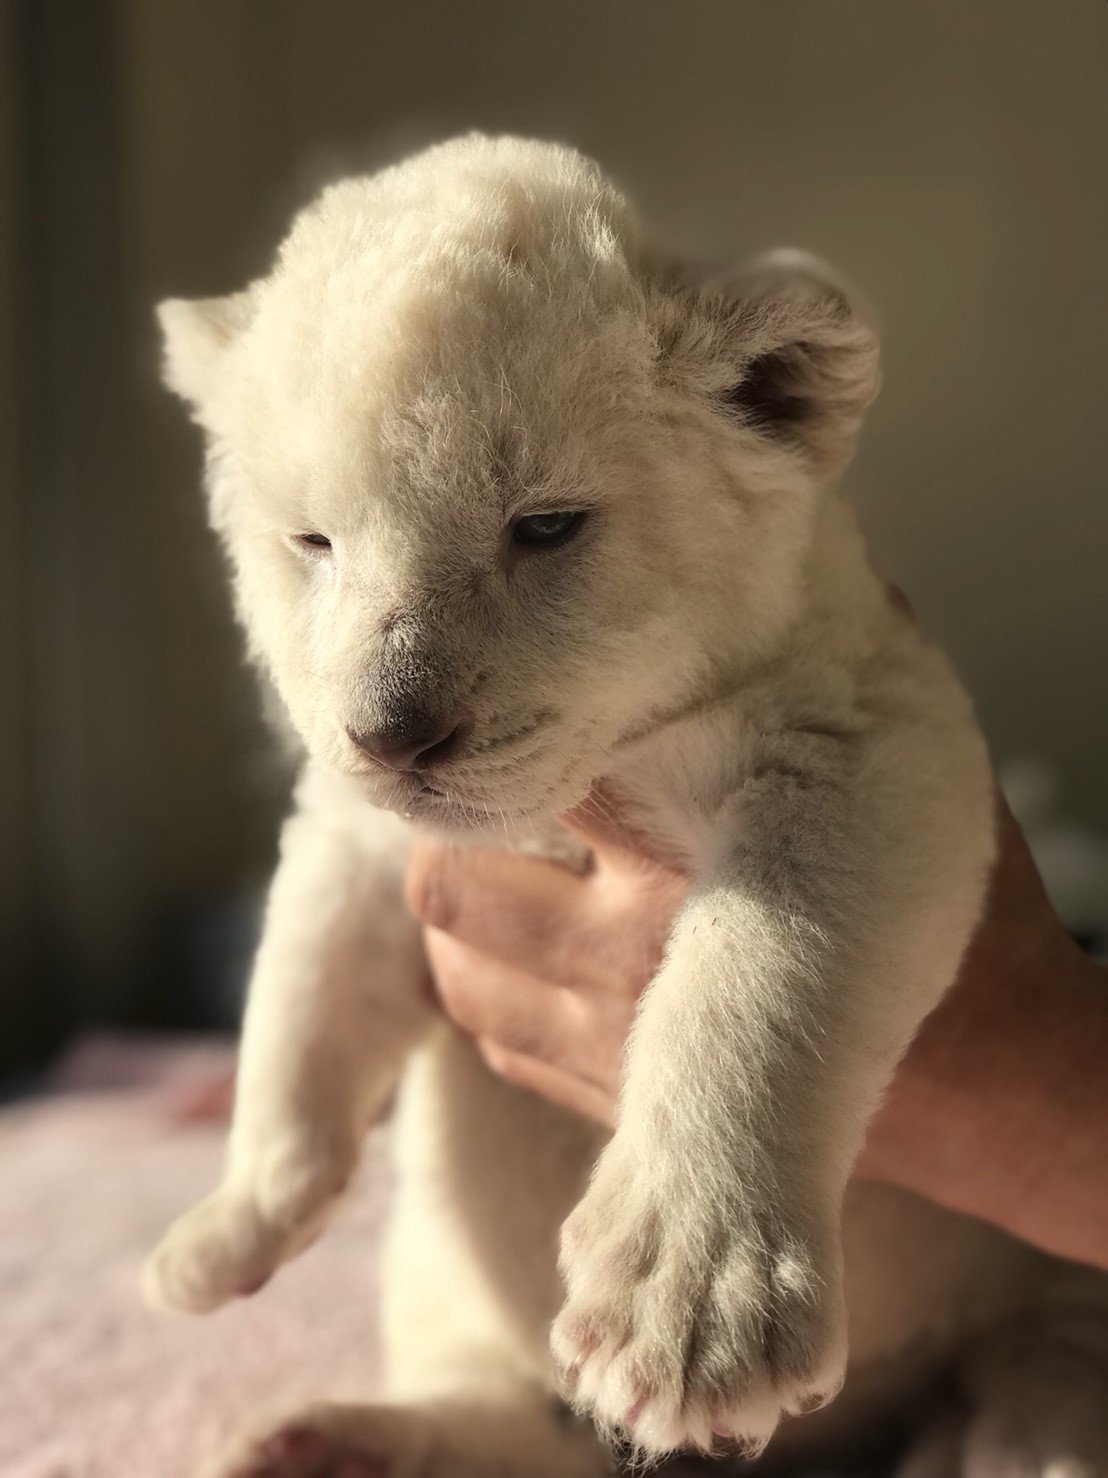 まや かわいい ホワイトライオンの赤ちゃん 動物癒される T Co L19w8jcnhx Twitter